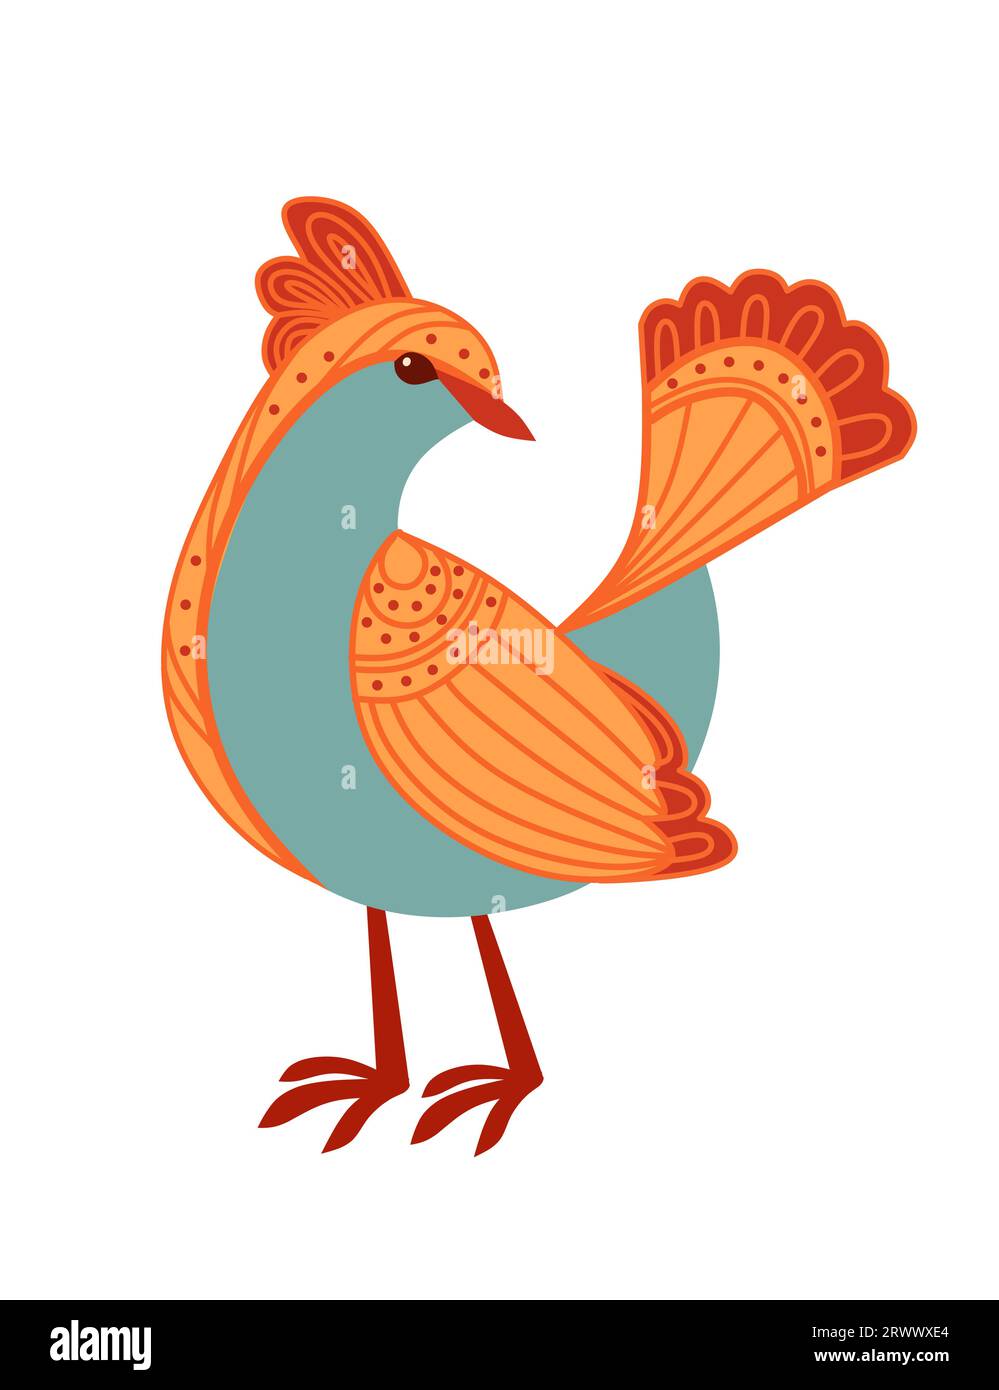 Petit oiseau de bande dessinée stylisé avec motif orange mignon illustration vectorielle de conception d'animaux isolé sur fond blanc Illustration de Vecteur